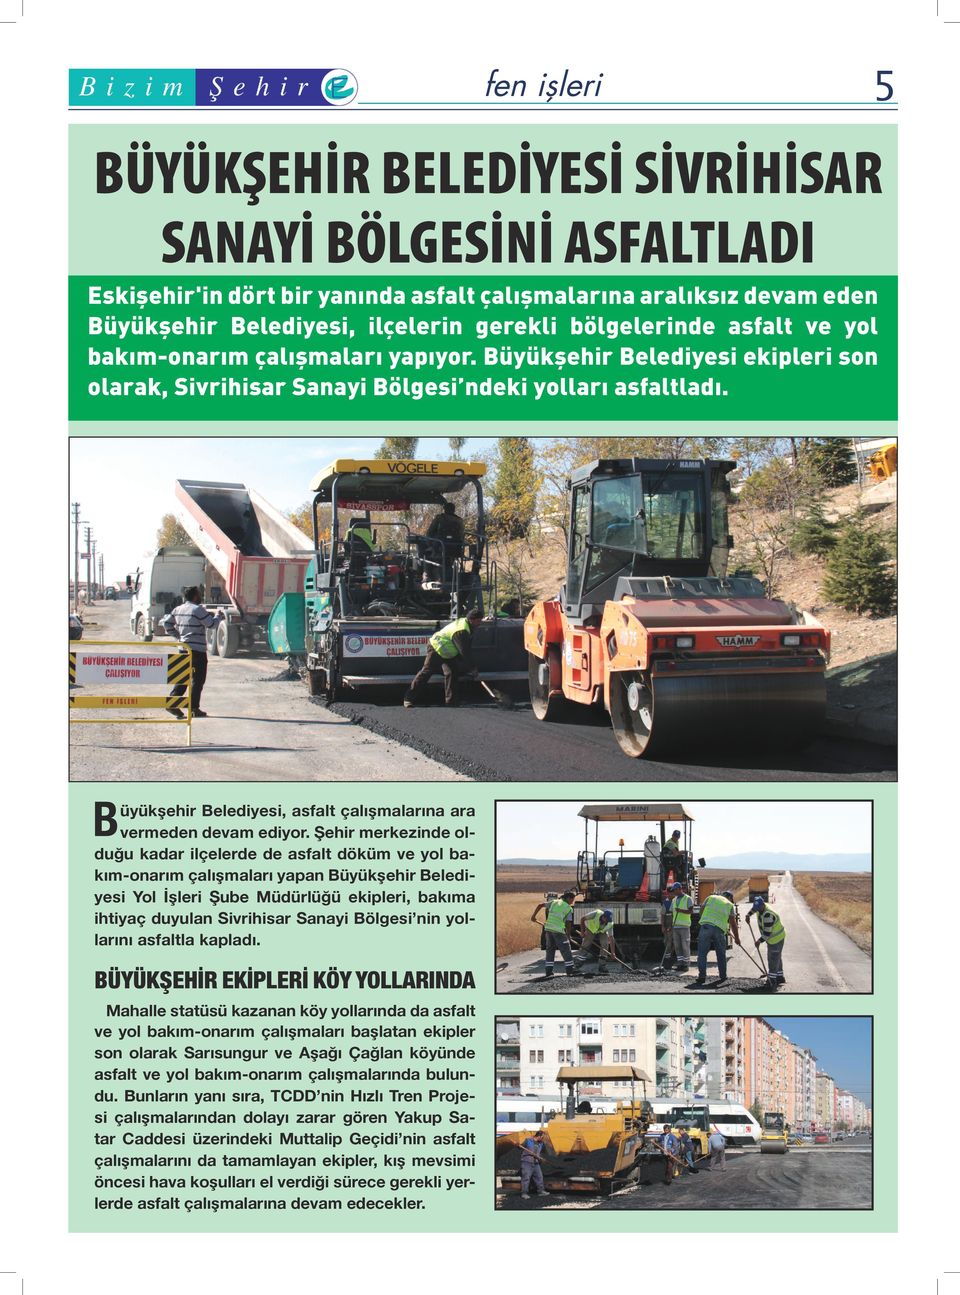 B üyükşehir Belediyesi, asfalt çalışmalarına ara vermeden devam ediyor.